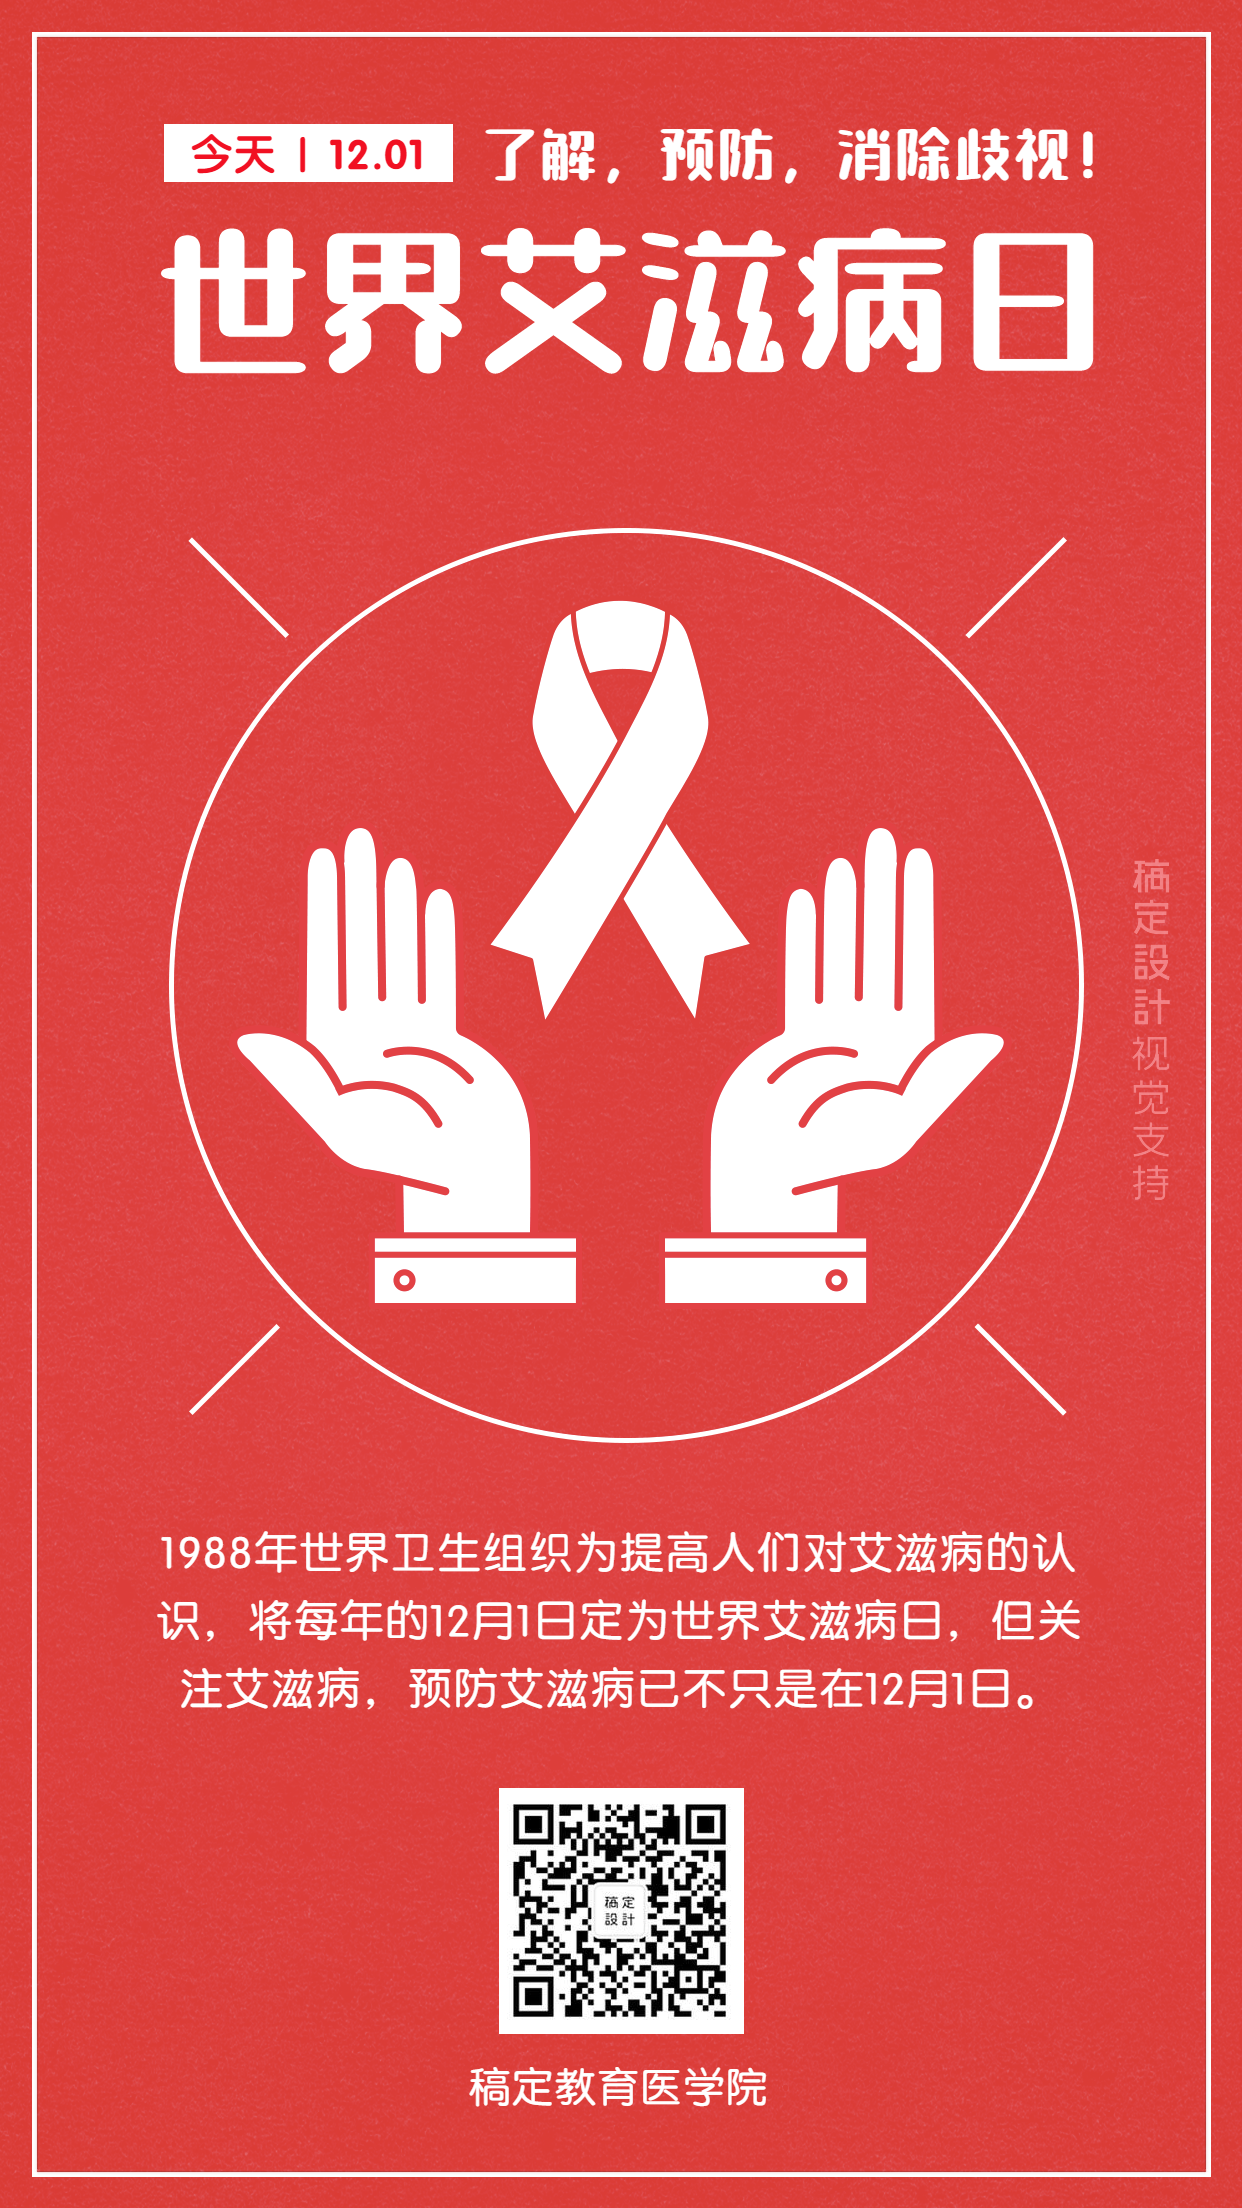 世界艾滋病预防日插画宣传海报预览效果